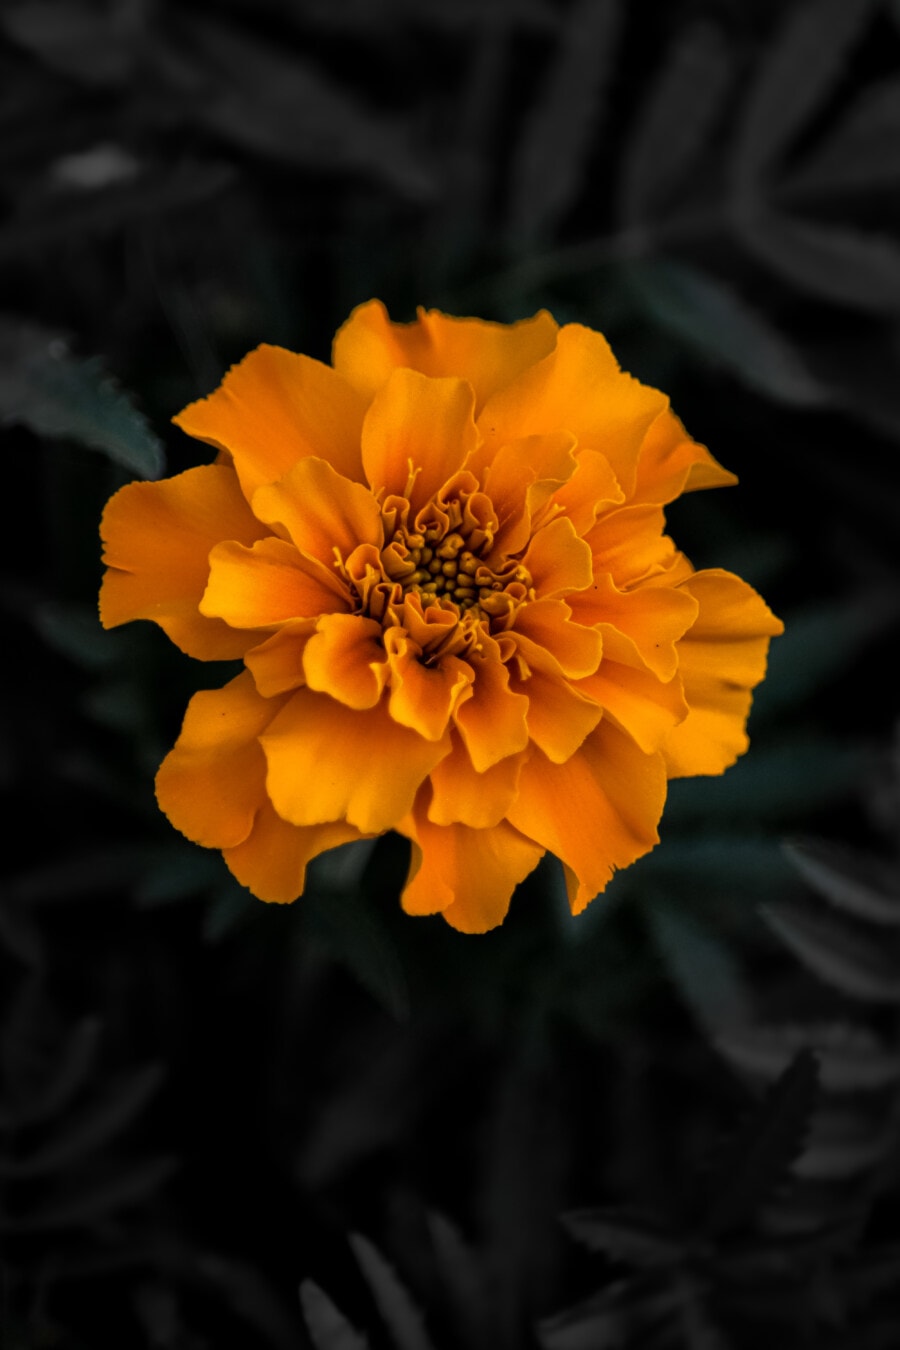 cvijet, narančasto žuta, latice, koji se njiše, flora, biljka, cvijet, priroda, cvatanje, biljka